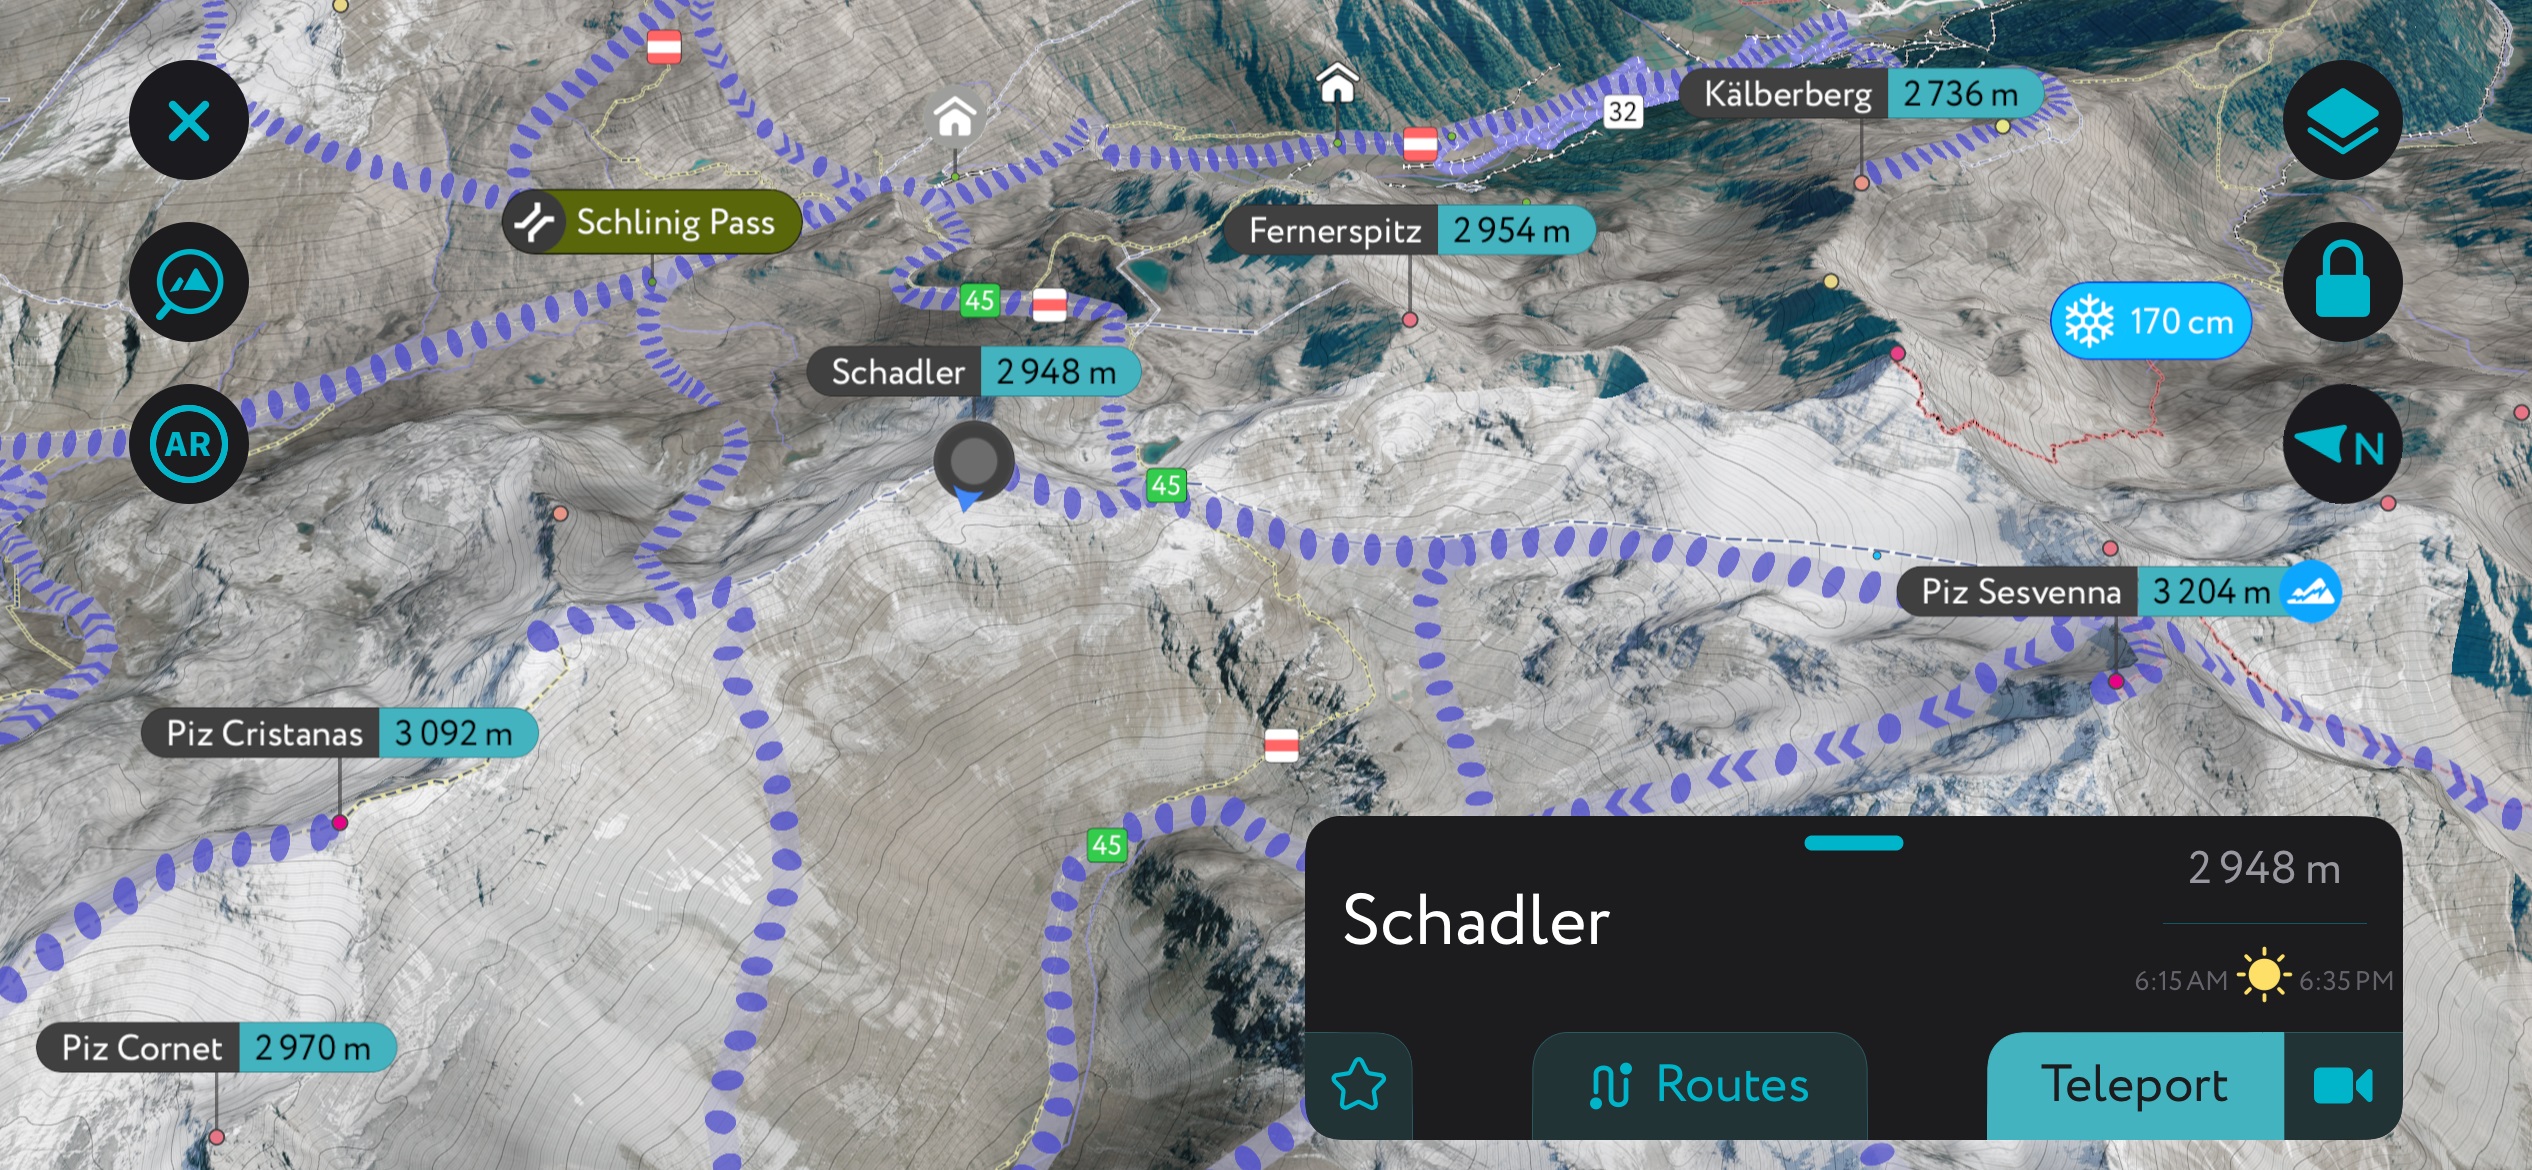 Schadler on the PeakVisor Mobile App. Sesvenna Alps